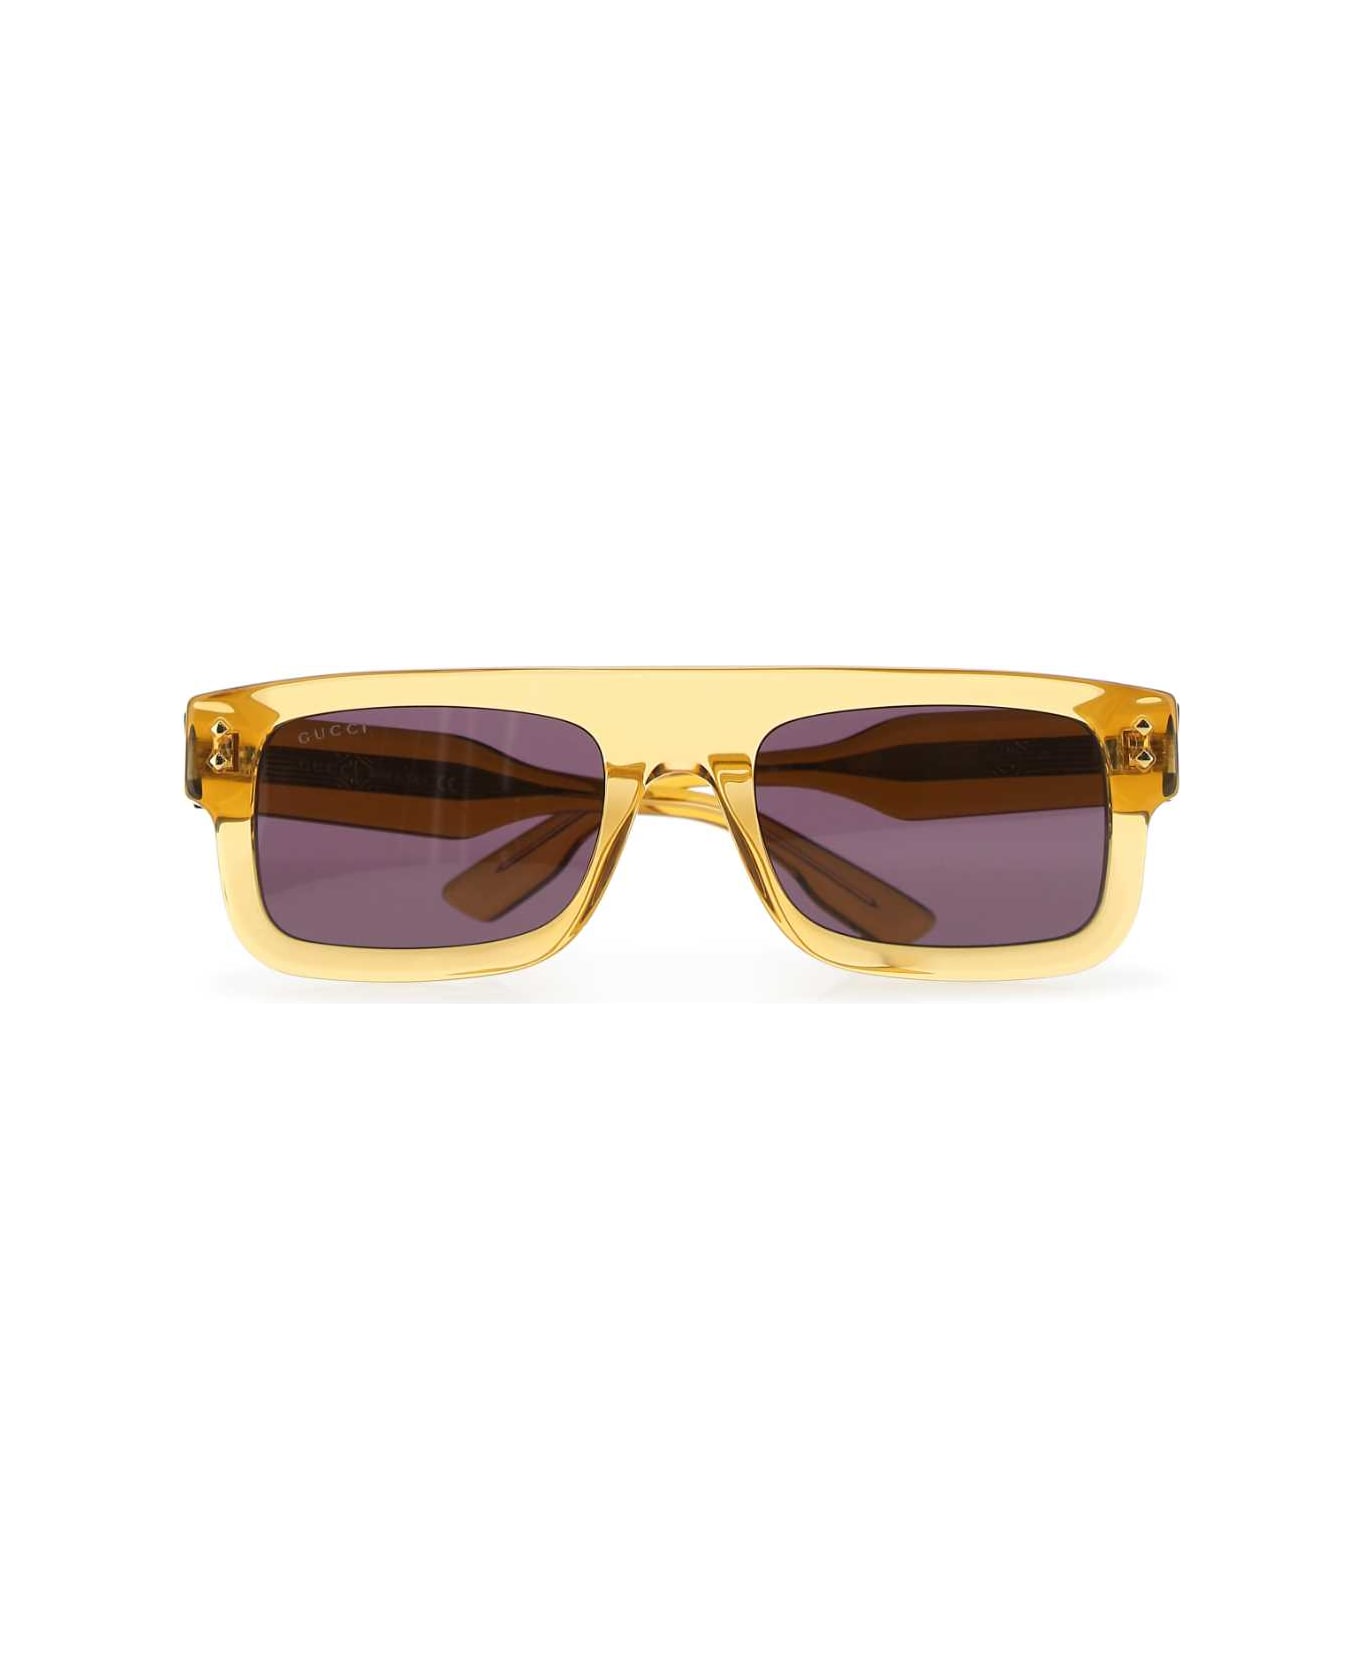 Gucci Ochre Acetate Sunglasses - 7012 サングラス